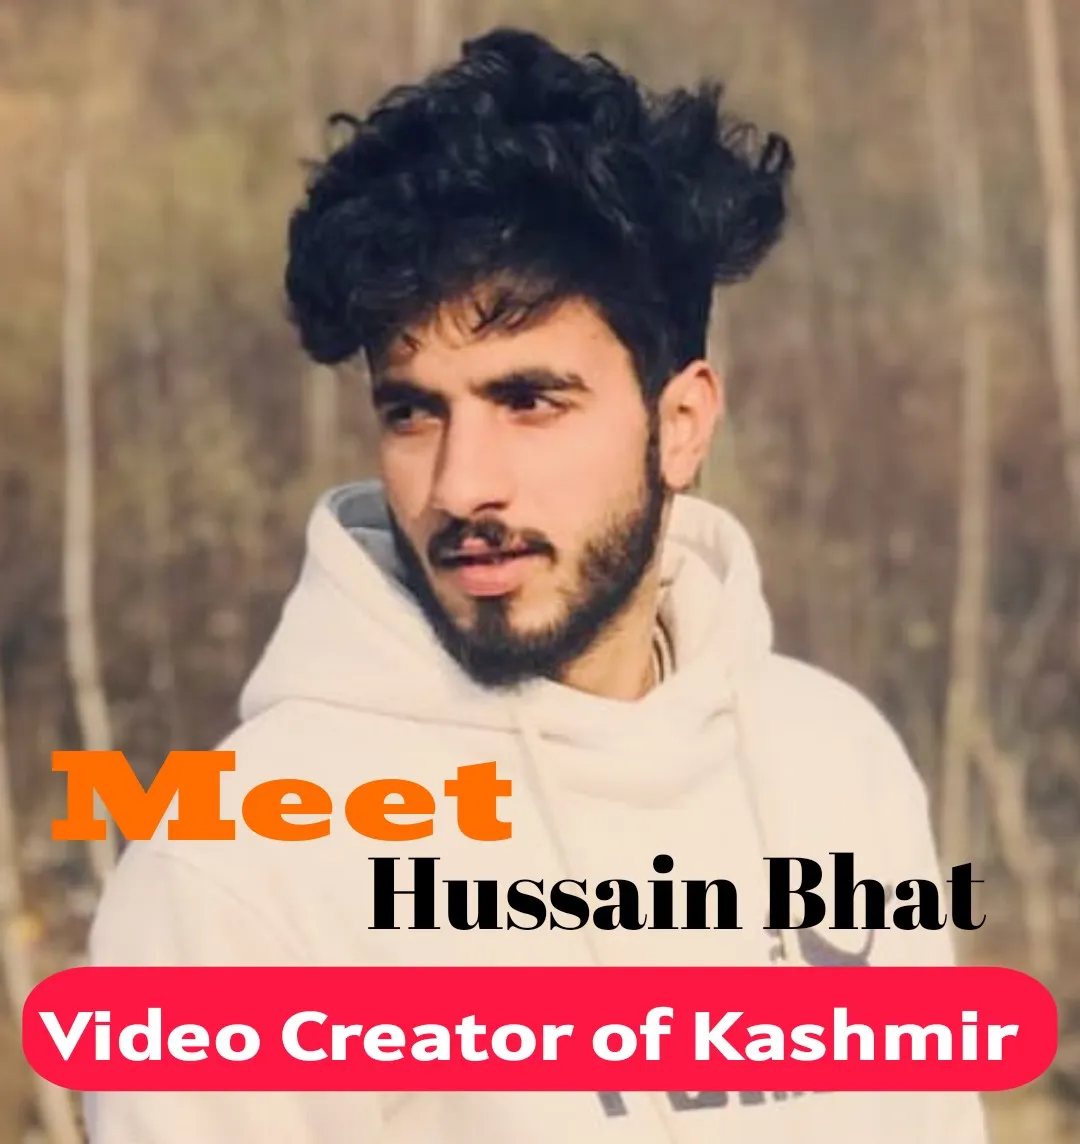 Meet Hussain Bhat Video Creator of Kashmir